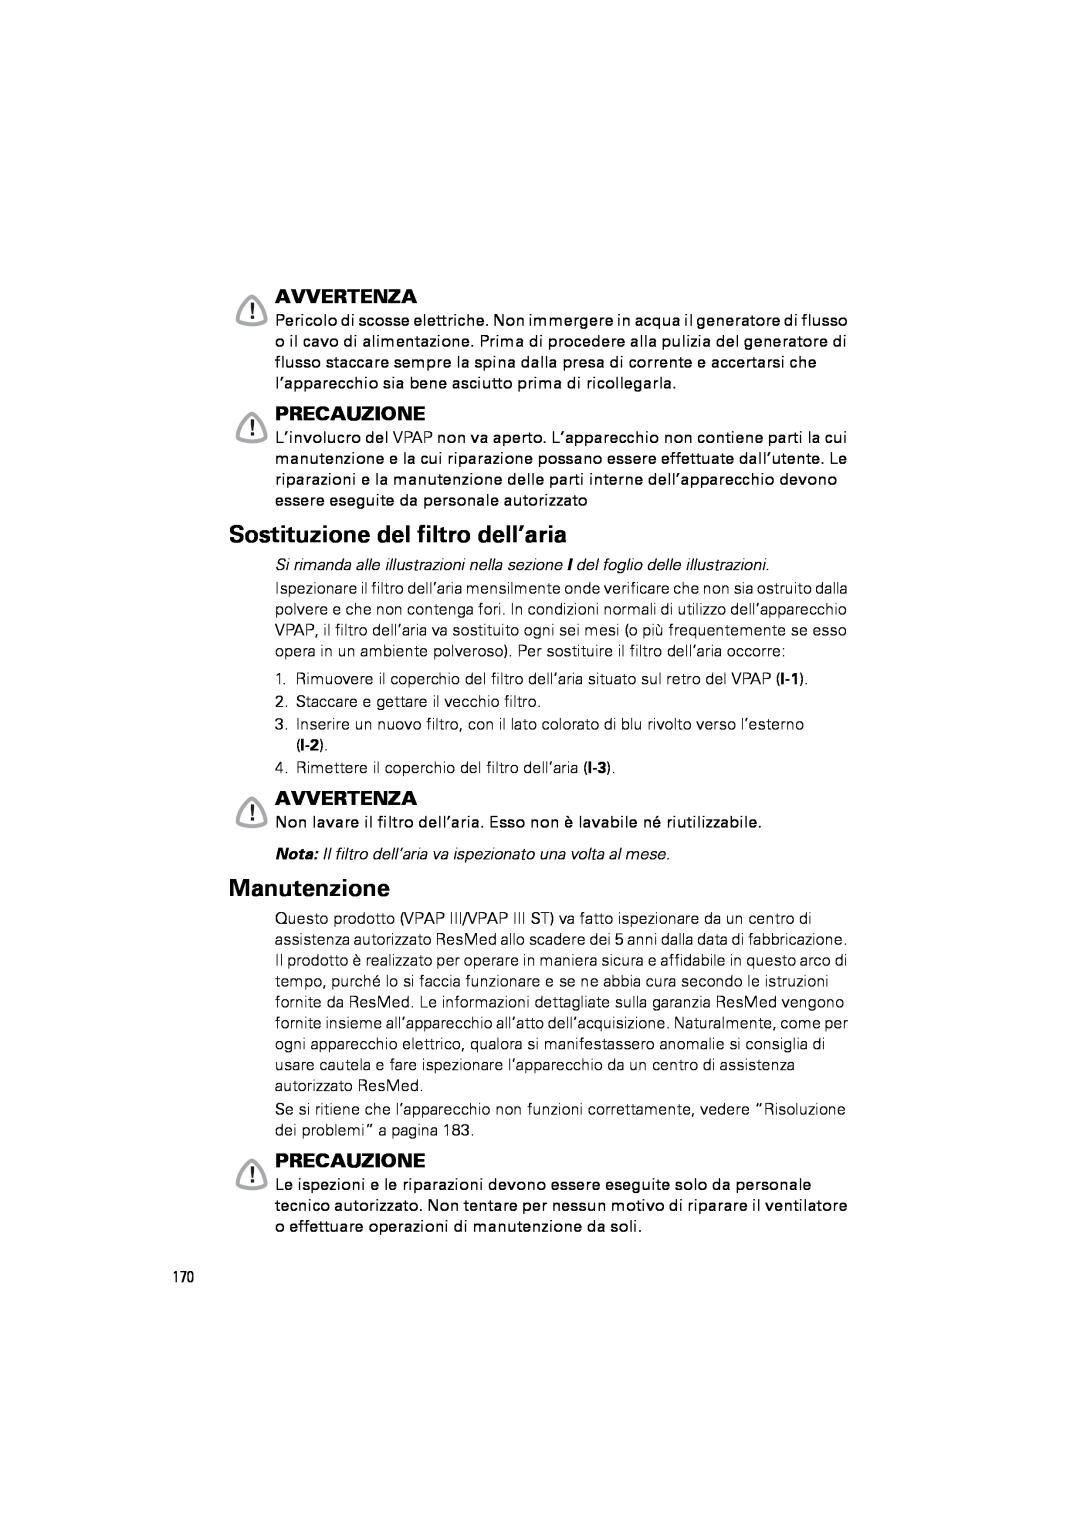 ResMed III & III ST user manual Sostituzione del filtro dell’aria, Manutenzione, Avvertenza, Precauzione 